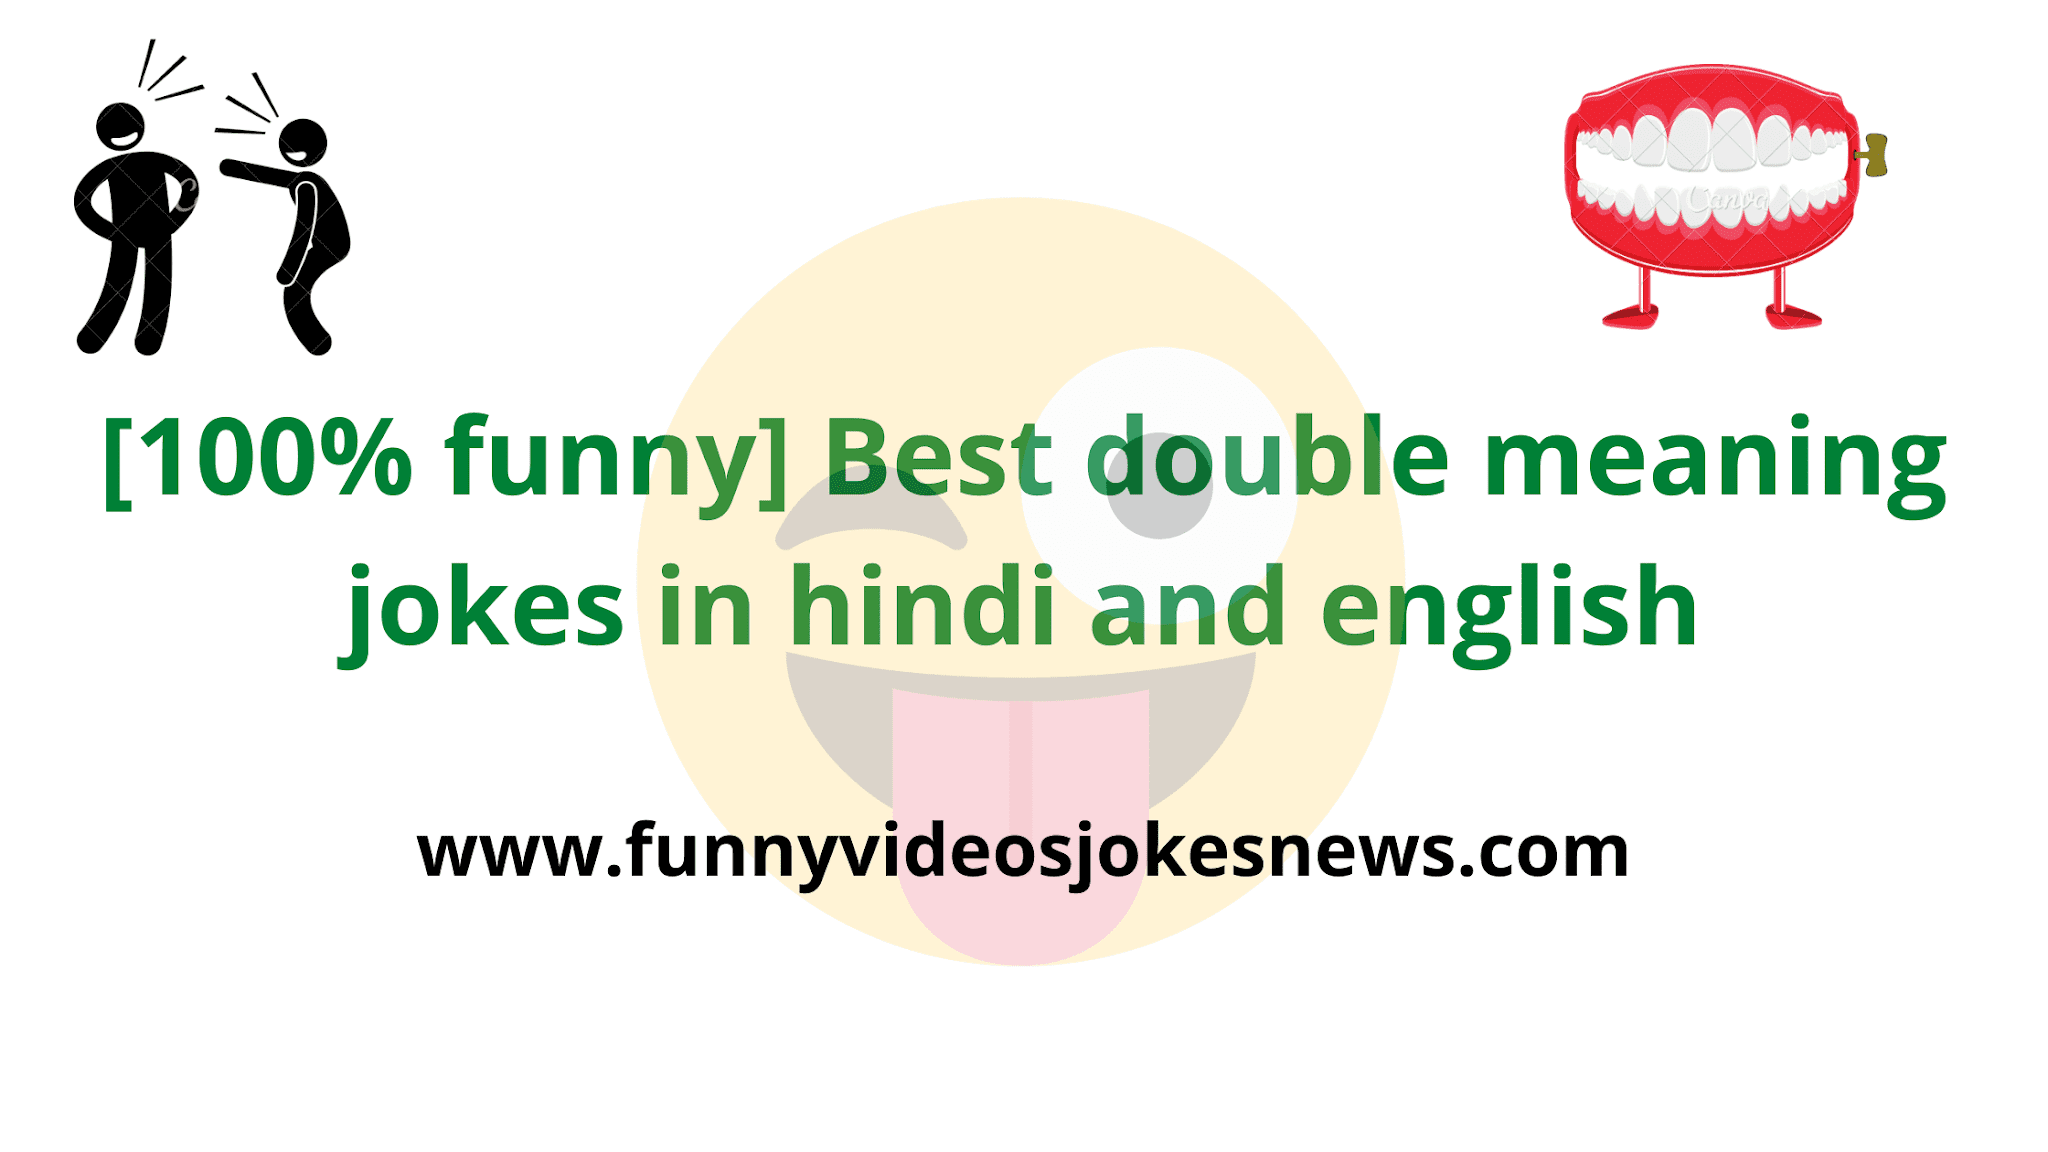 100 Funny Best Double Meaning Jokes In Hindi And English à¤šà¤Ÿà¤ªà¤Ÿ à¤¡à¤¬à¤² à¤® à¤¨ à¤— à¤œ à¤• à¤¸ And à¤š à¤Ÿà¤• à¤²